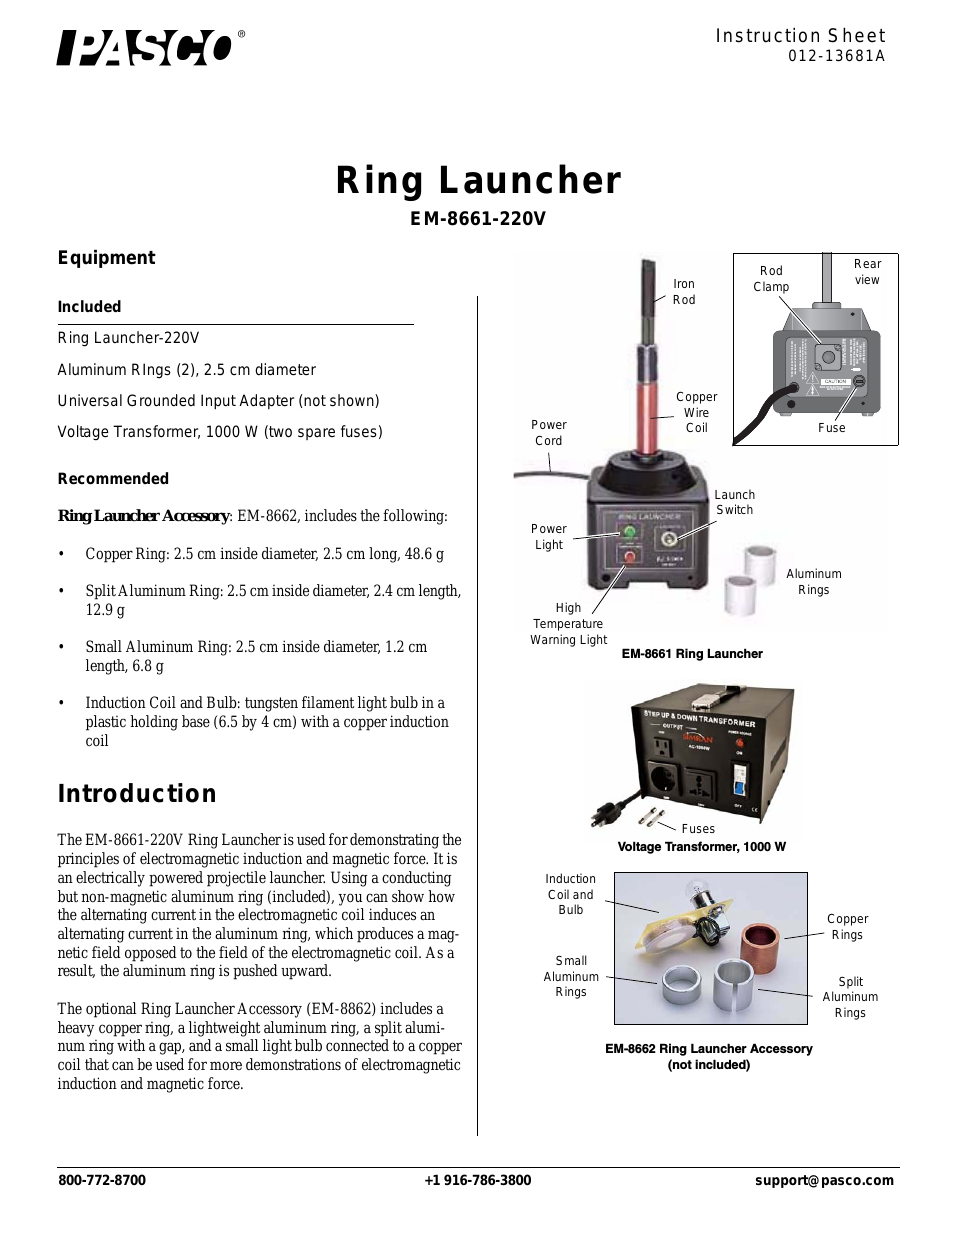 EM-8661-220V Ring Launcher